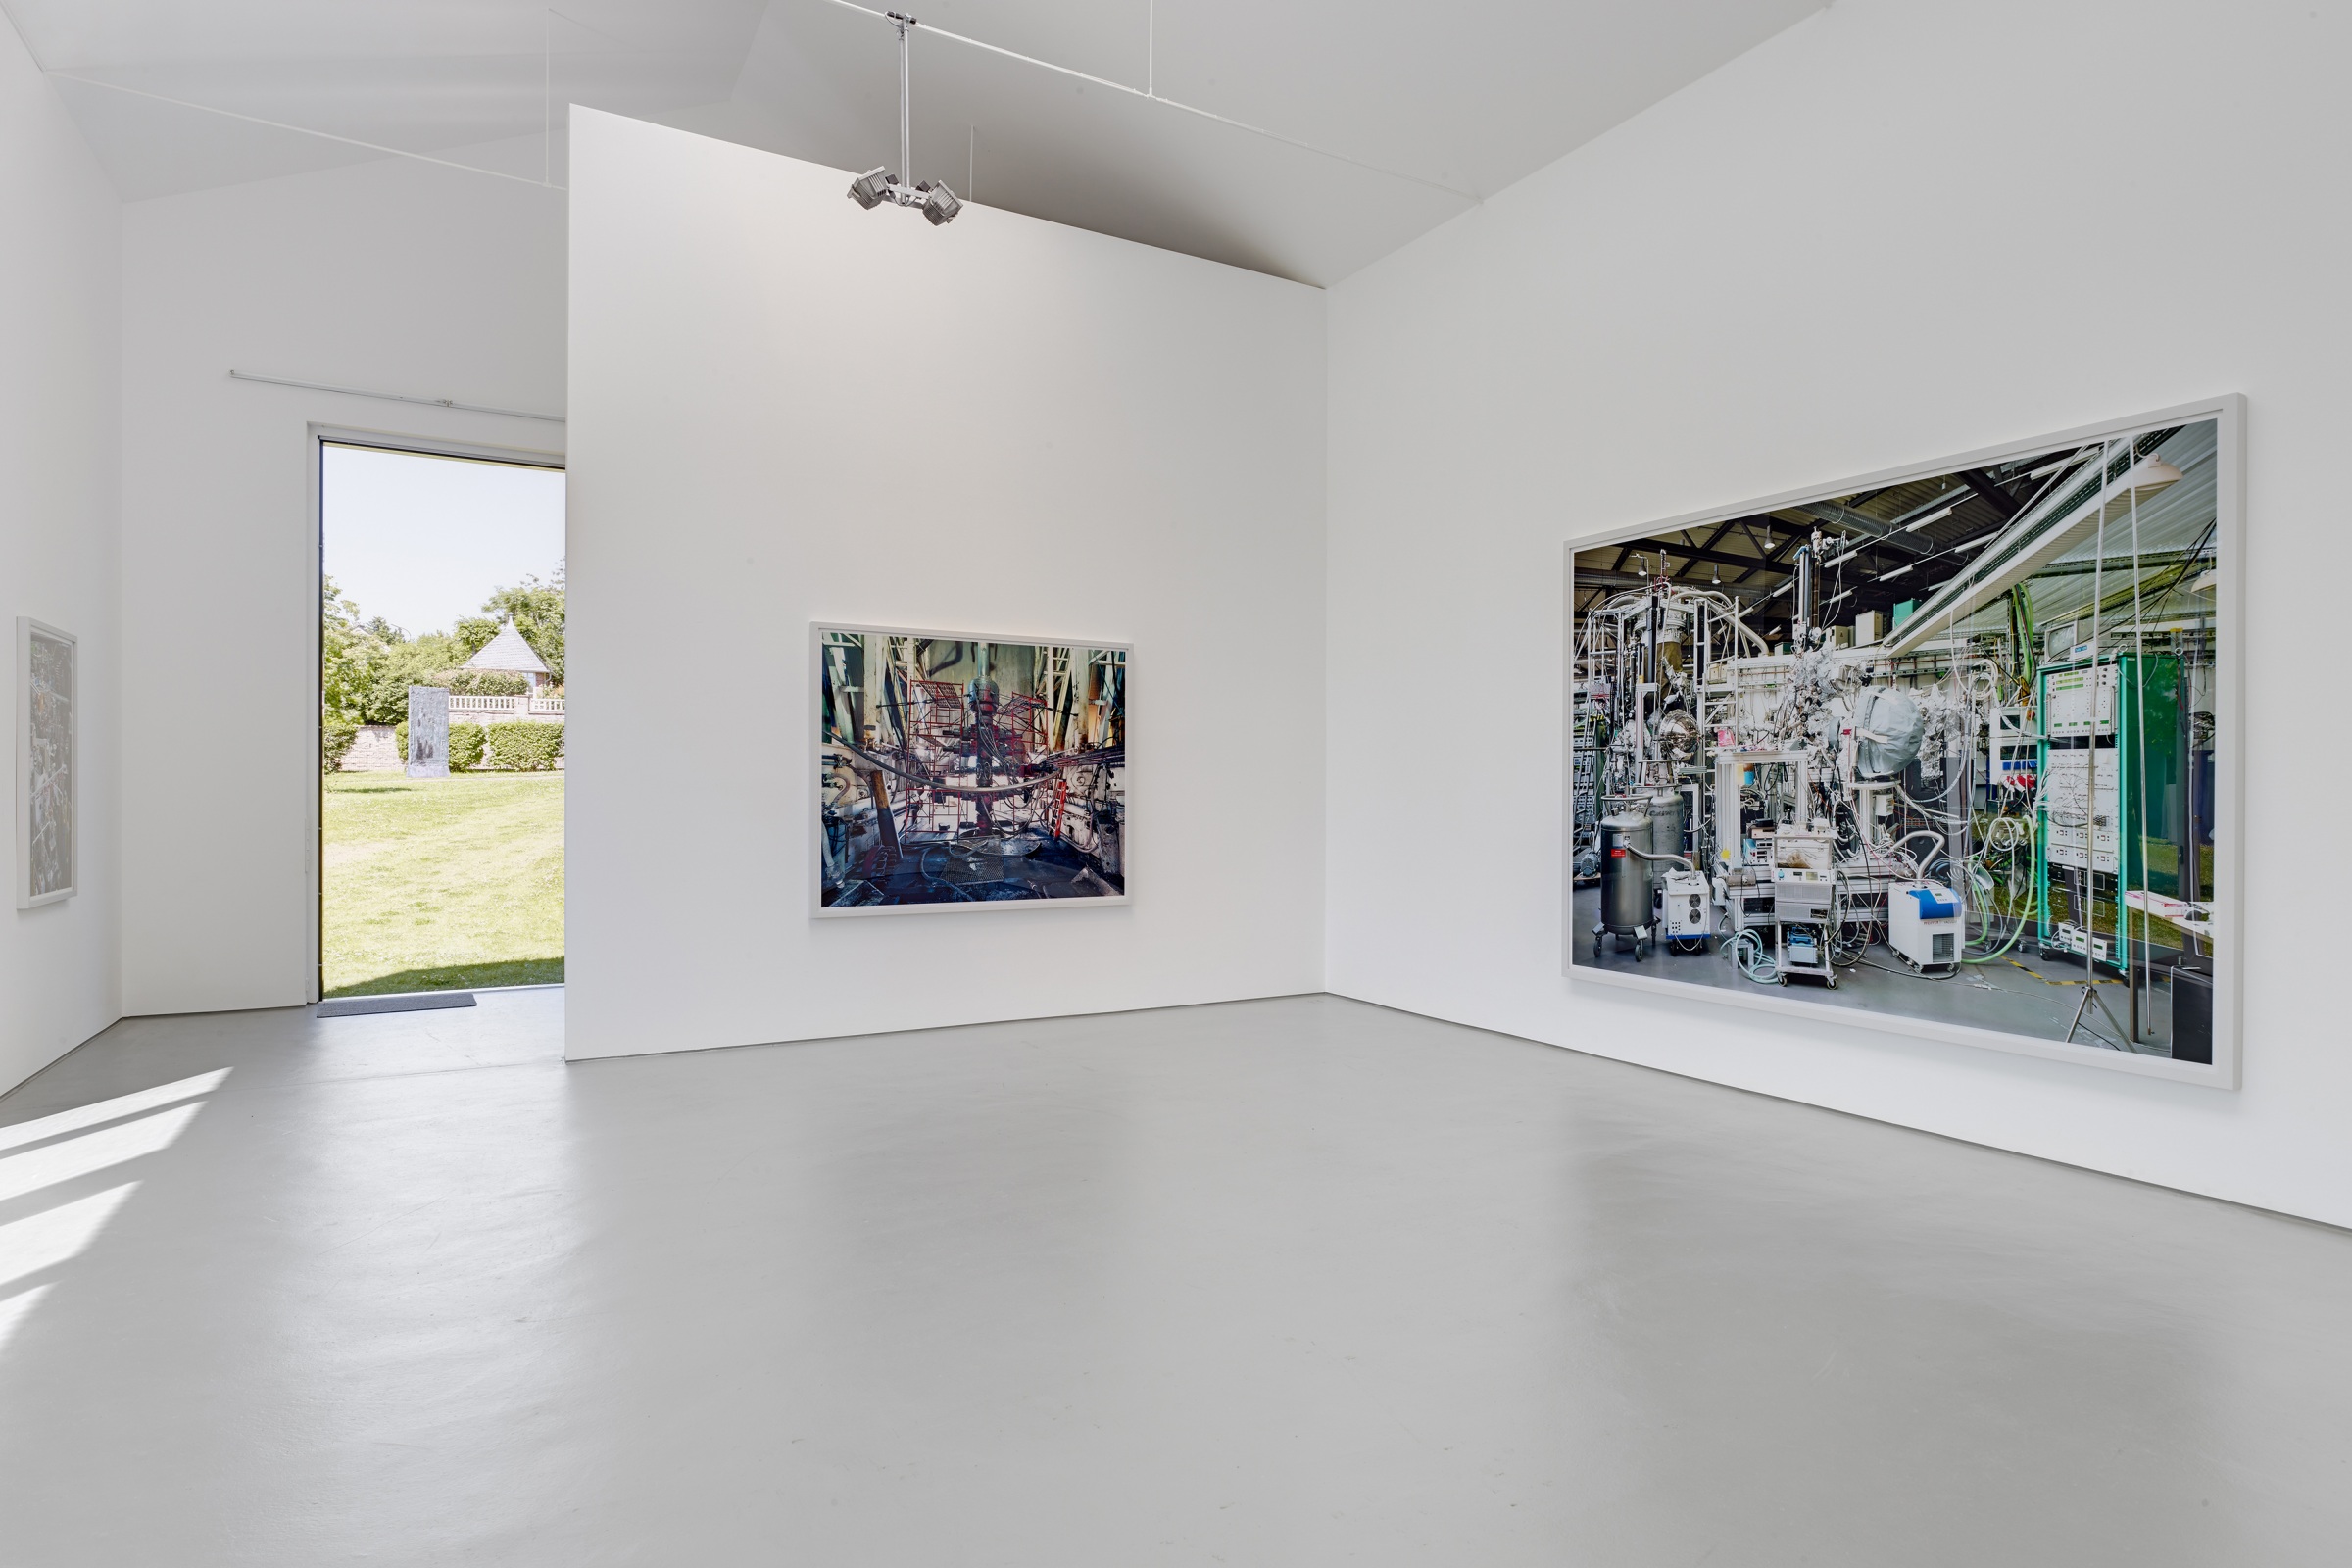 Thomas Struth, Ausstellungsansicht, 2013